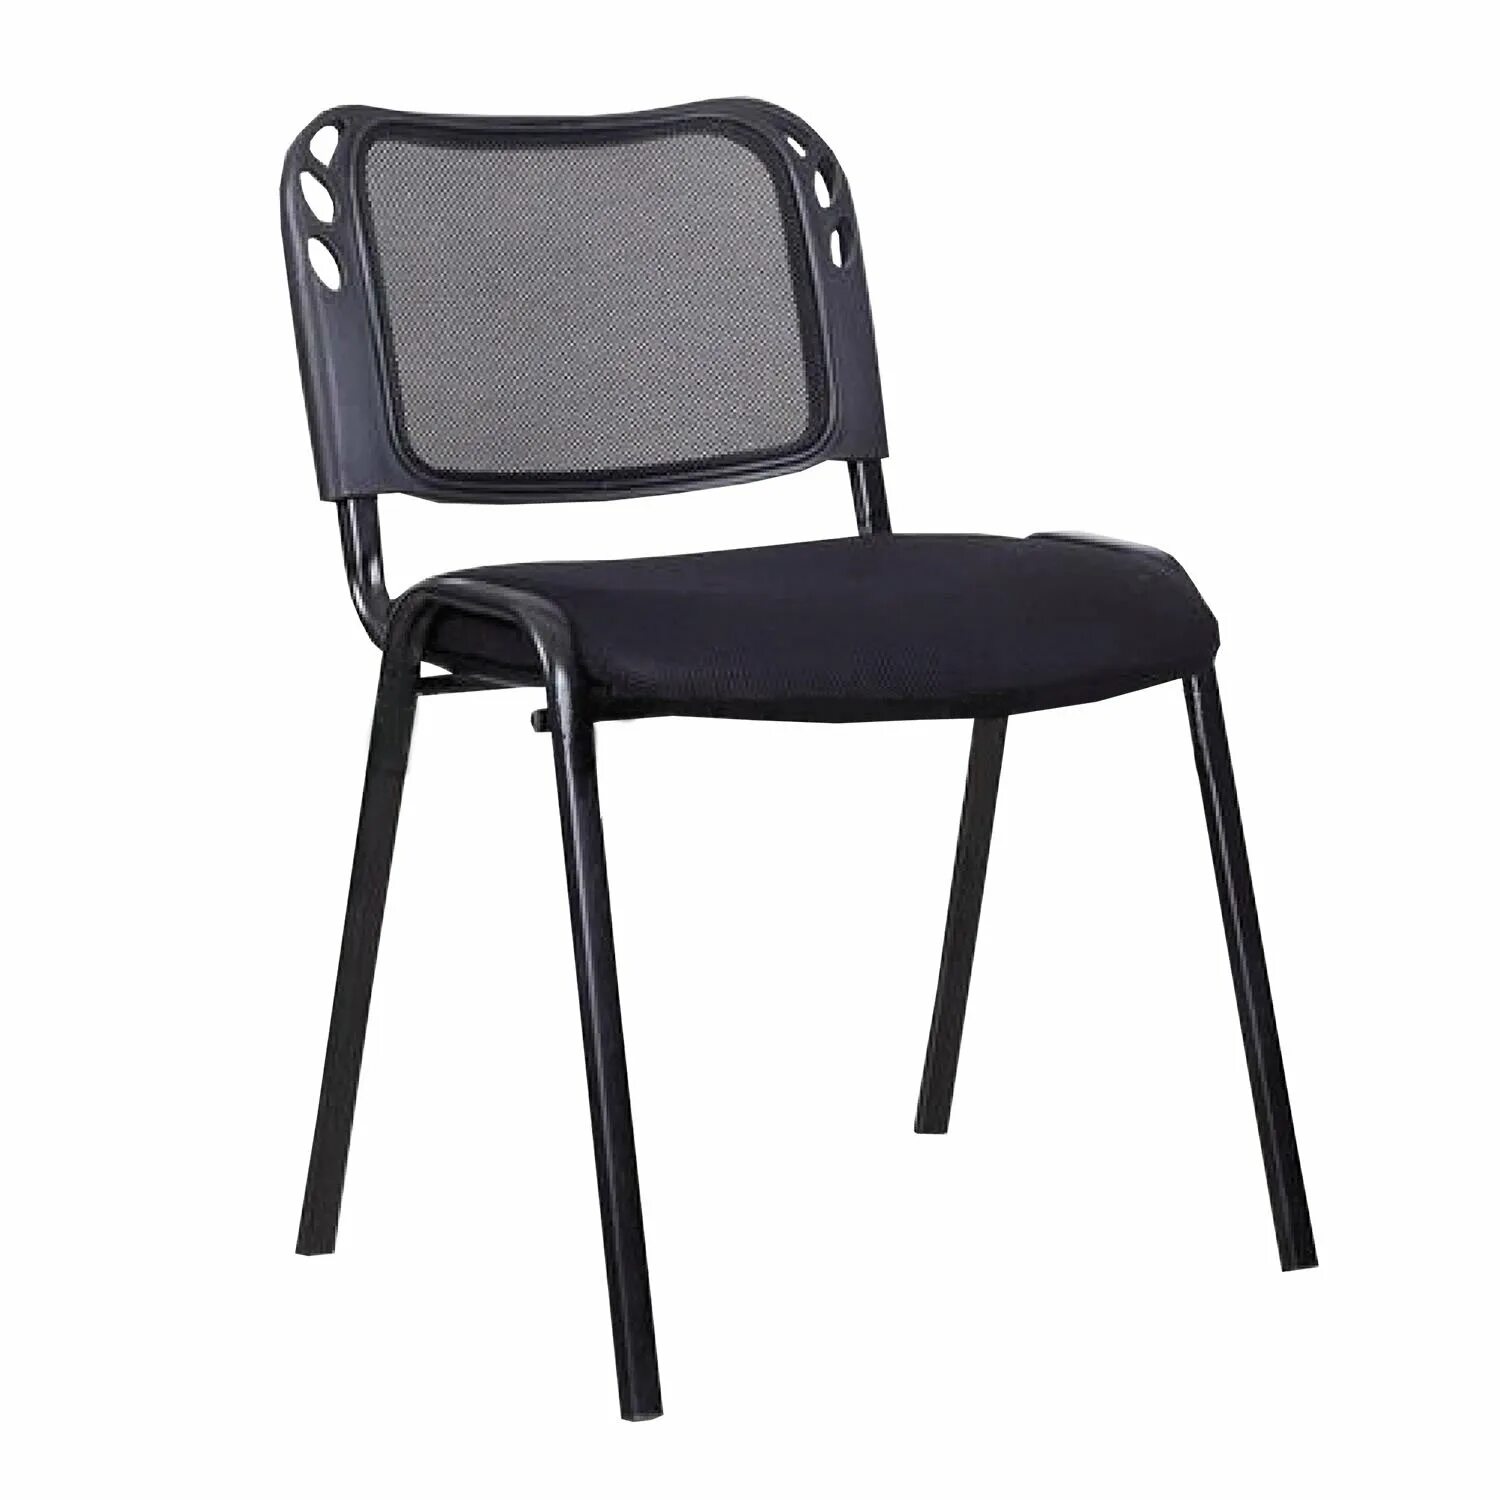 Офисный стул материал. Стул Домино x, спинка-сетка. Стул для посетителей спинка сетка.